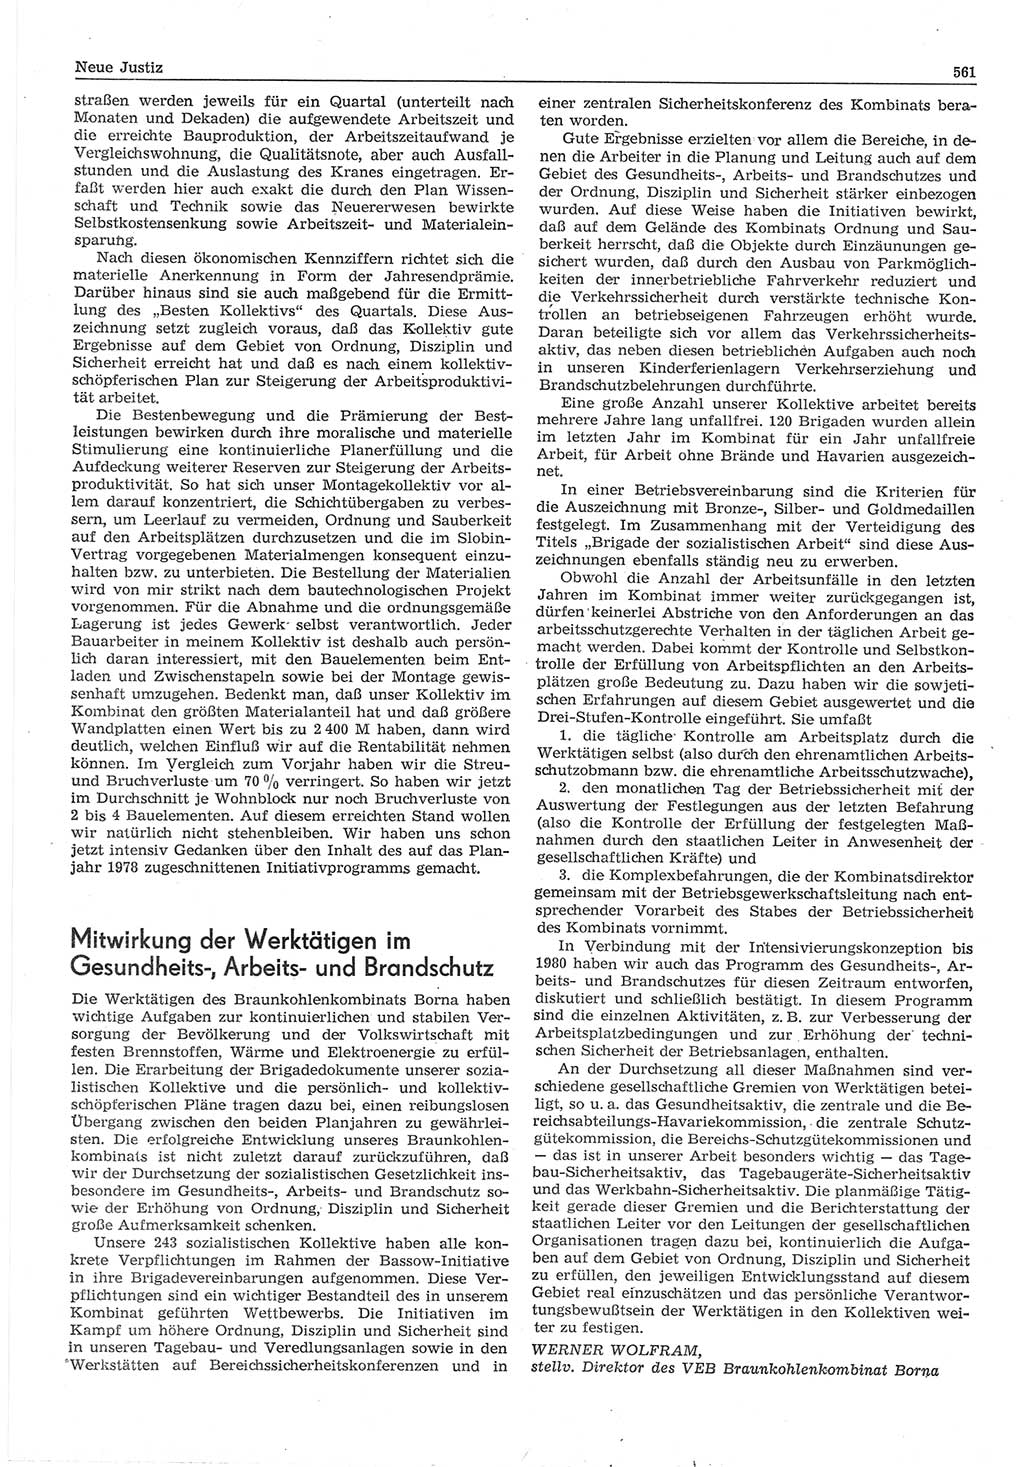 Neue Justiz (NJ), Zeitschrift für Recht und Rechtswissenschaft-Zeitschrift, sozialistisches Recht und Gesetzlichkeit, 31. Jahrgang 1977, Seite 561 (NJ DDR 1977, S. 561)